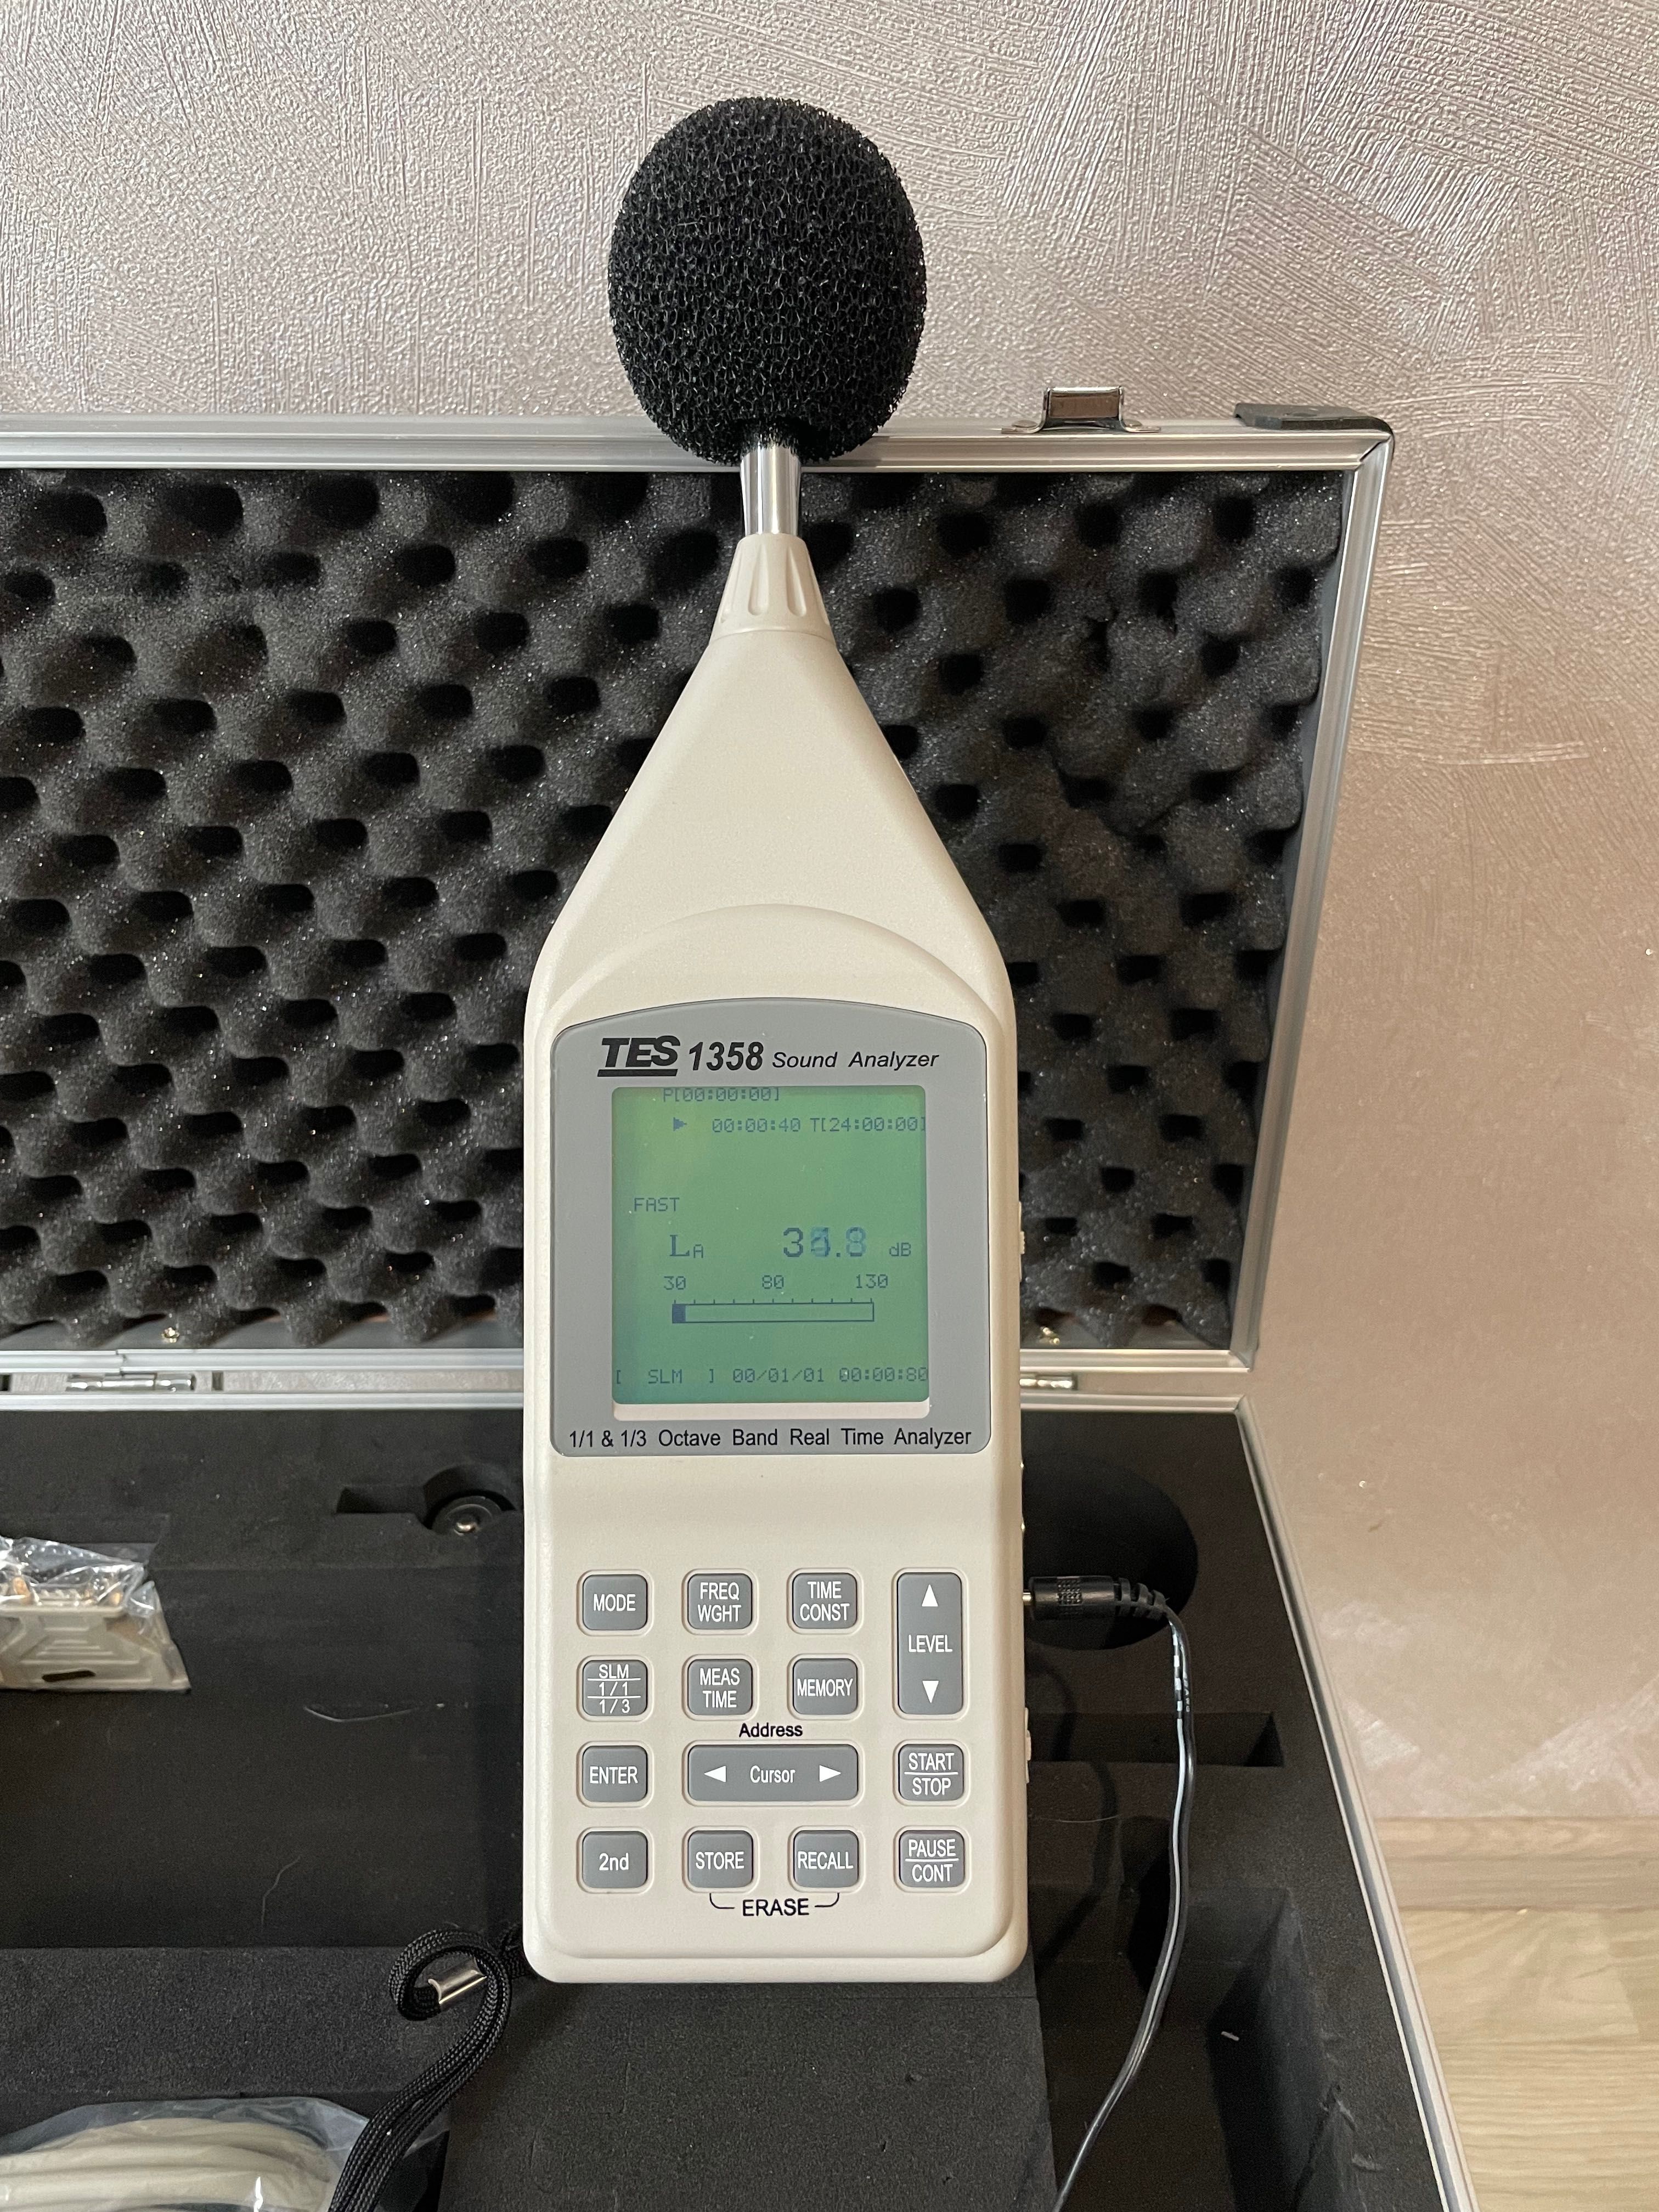 Акустический анализатор TES1358 измеритель звука.Новый!